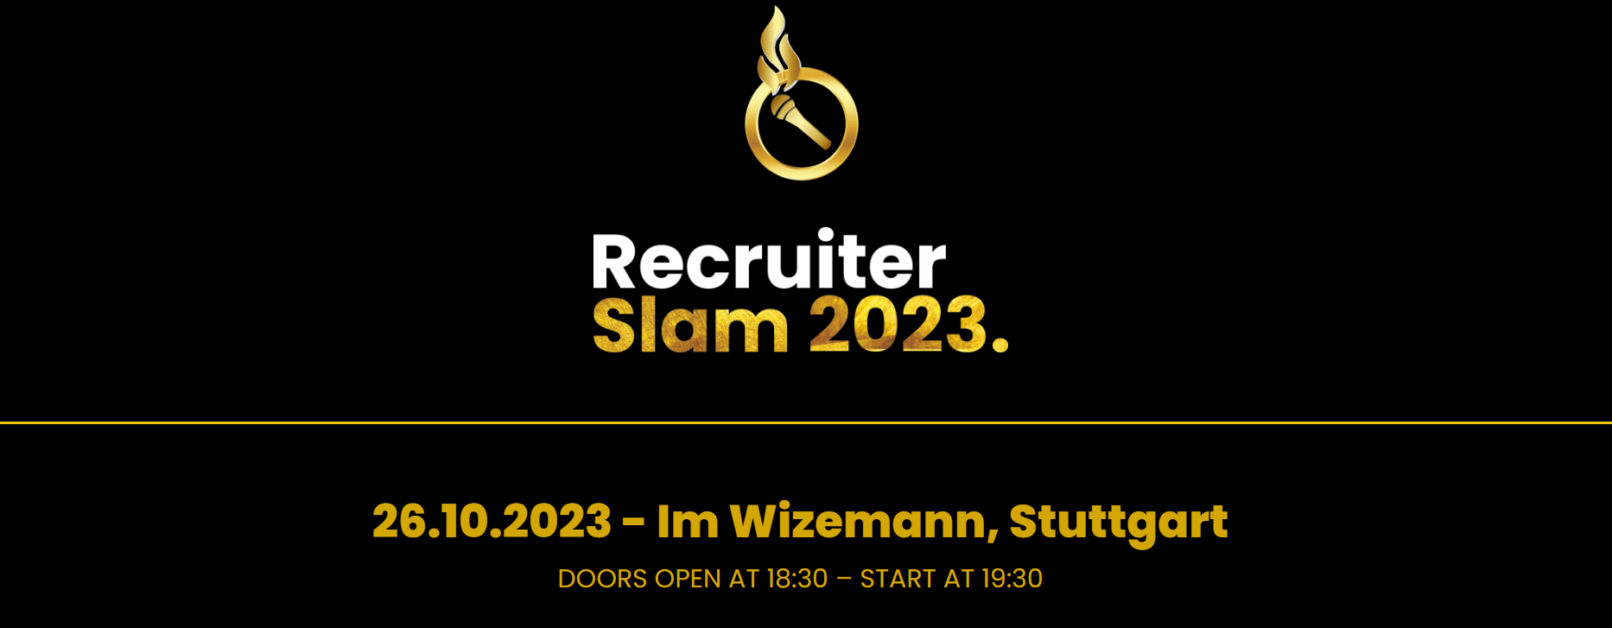 Recruiter Slam am 26. Oktober 2023 in Stuttgart